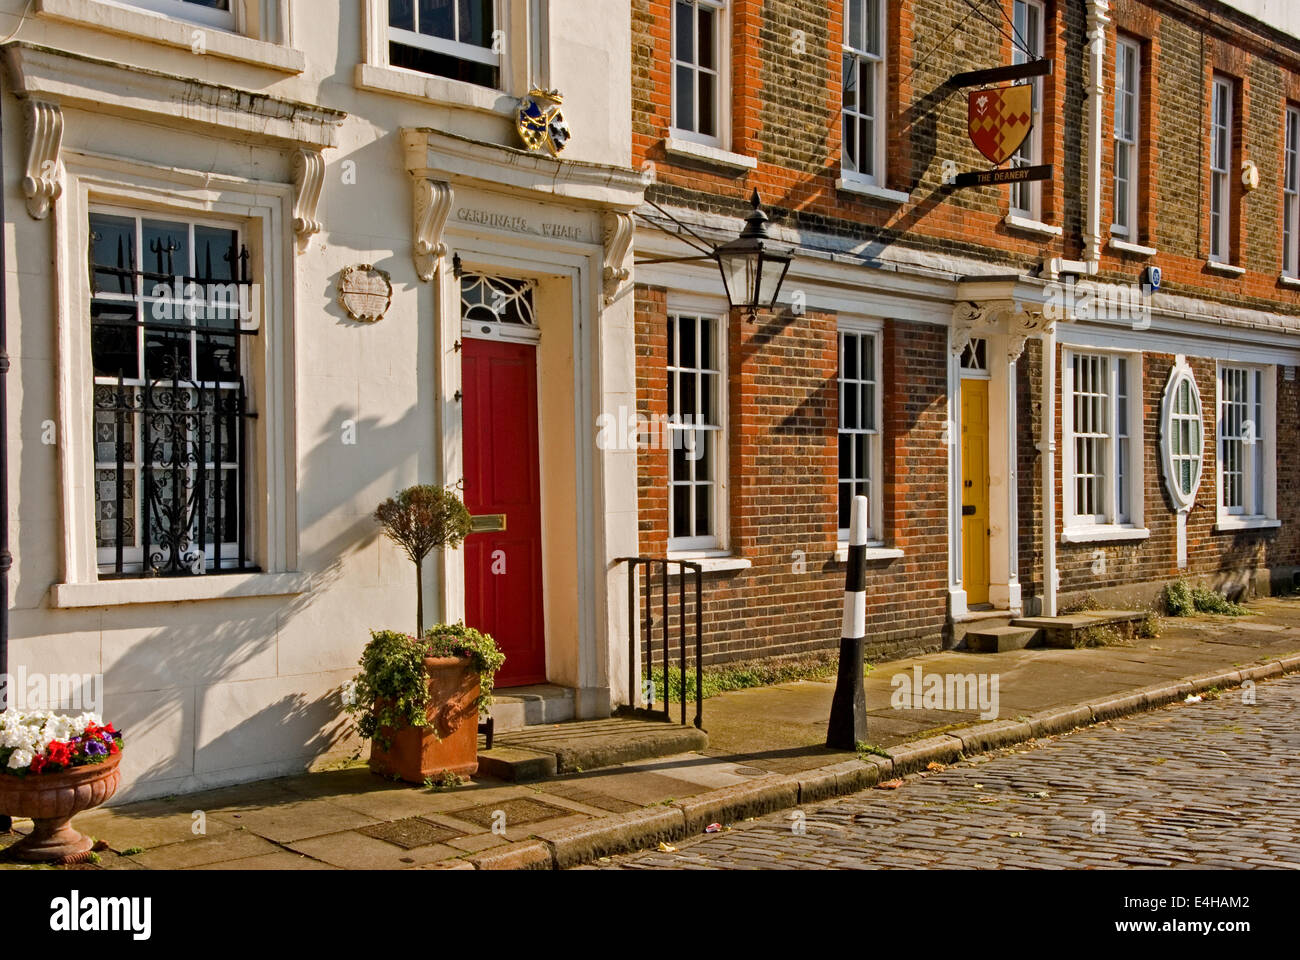 Londres adosados con calle adoquinada, bañada por el sol. Foto de stock